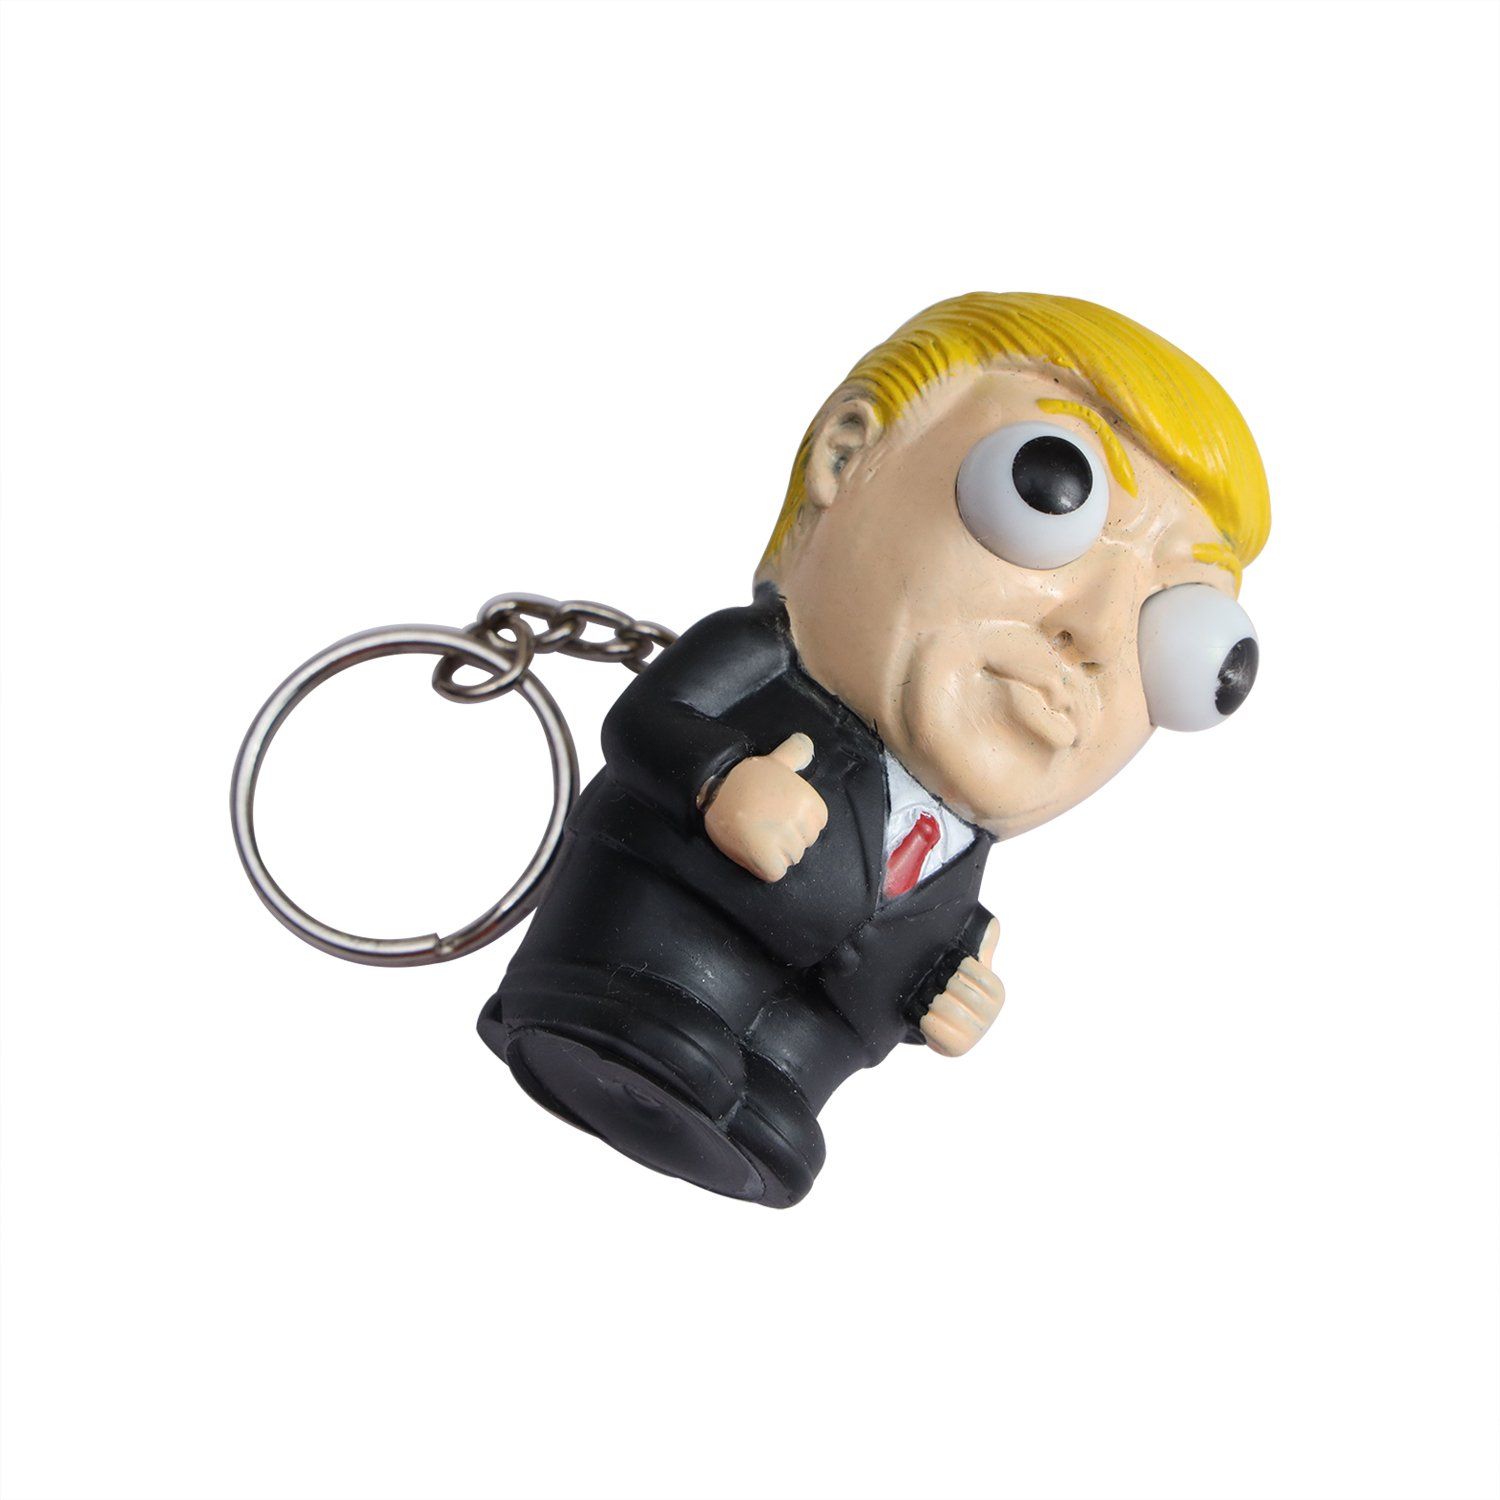 Donald Trump Keychain - KibrisPDR